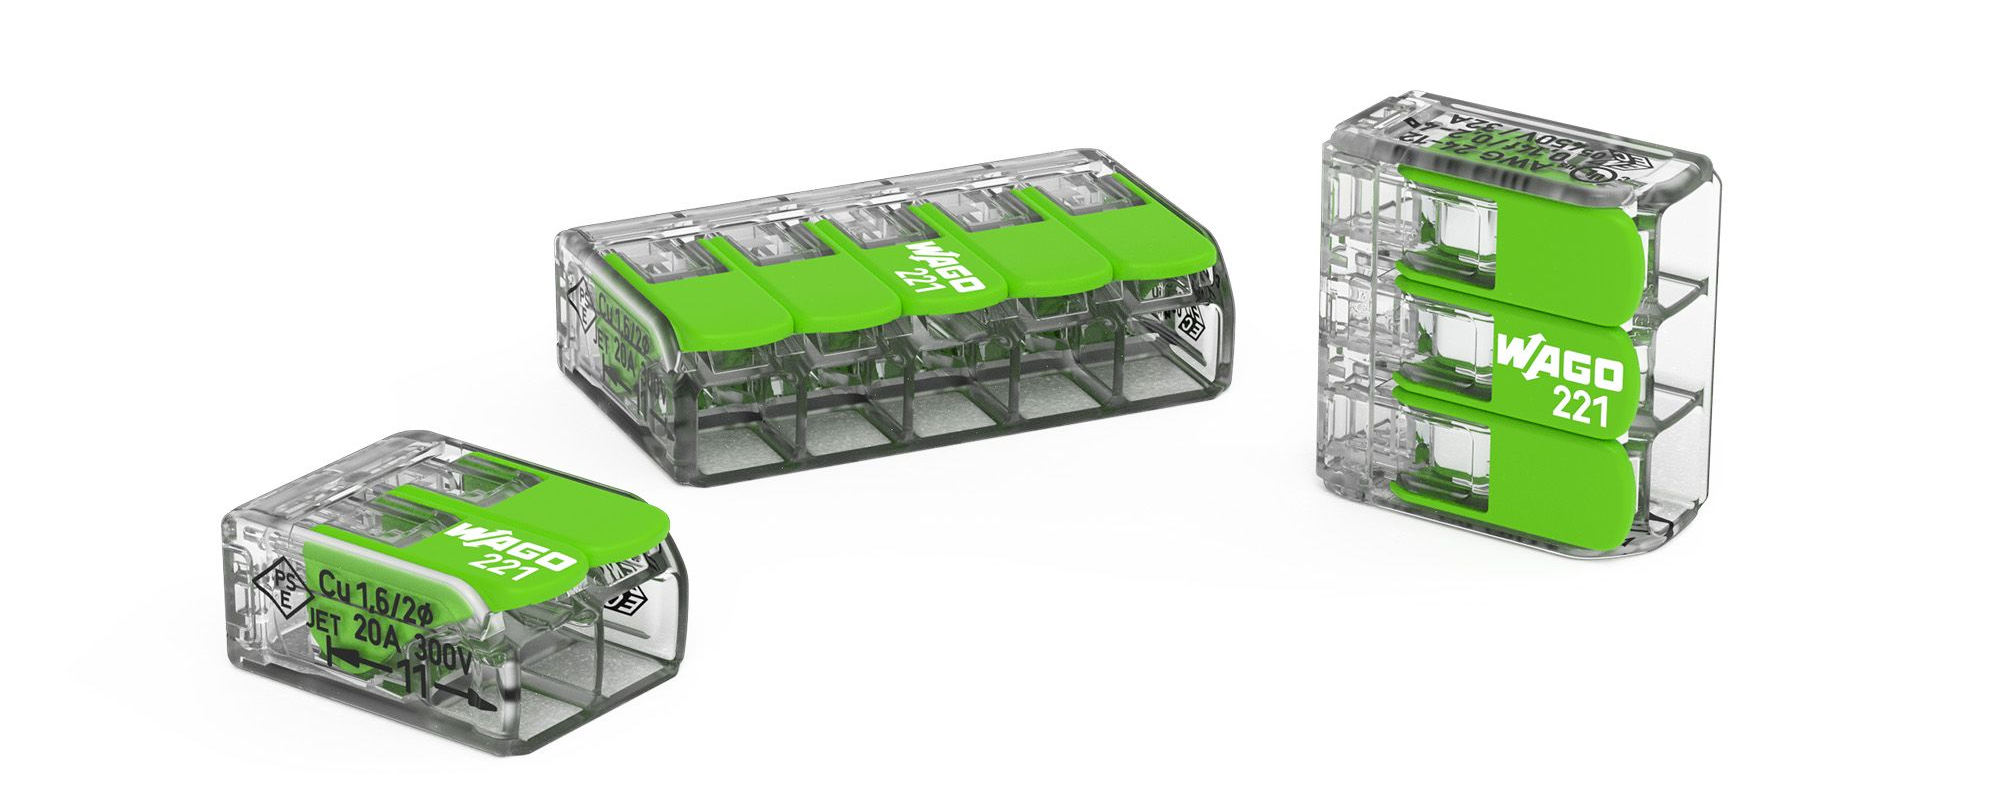 WAGO maakt bestaande lasklem groen: ‘Product van de lange adem’